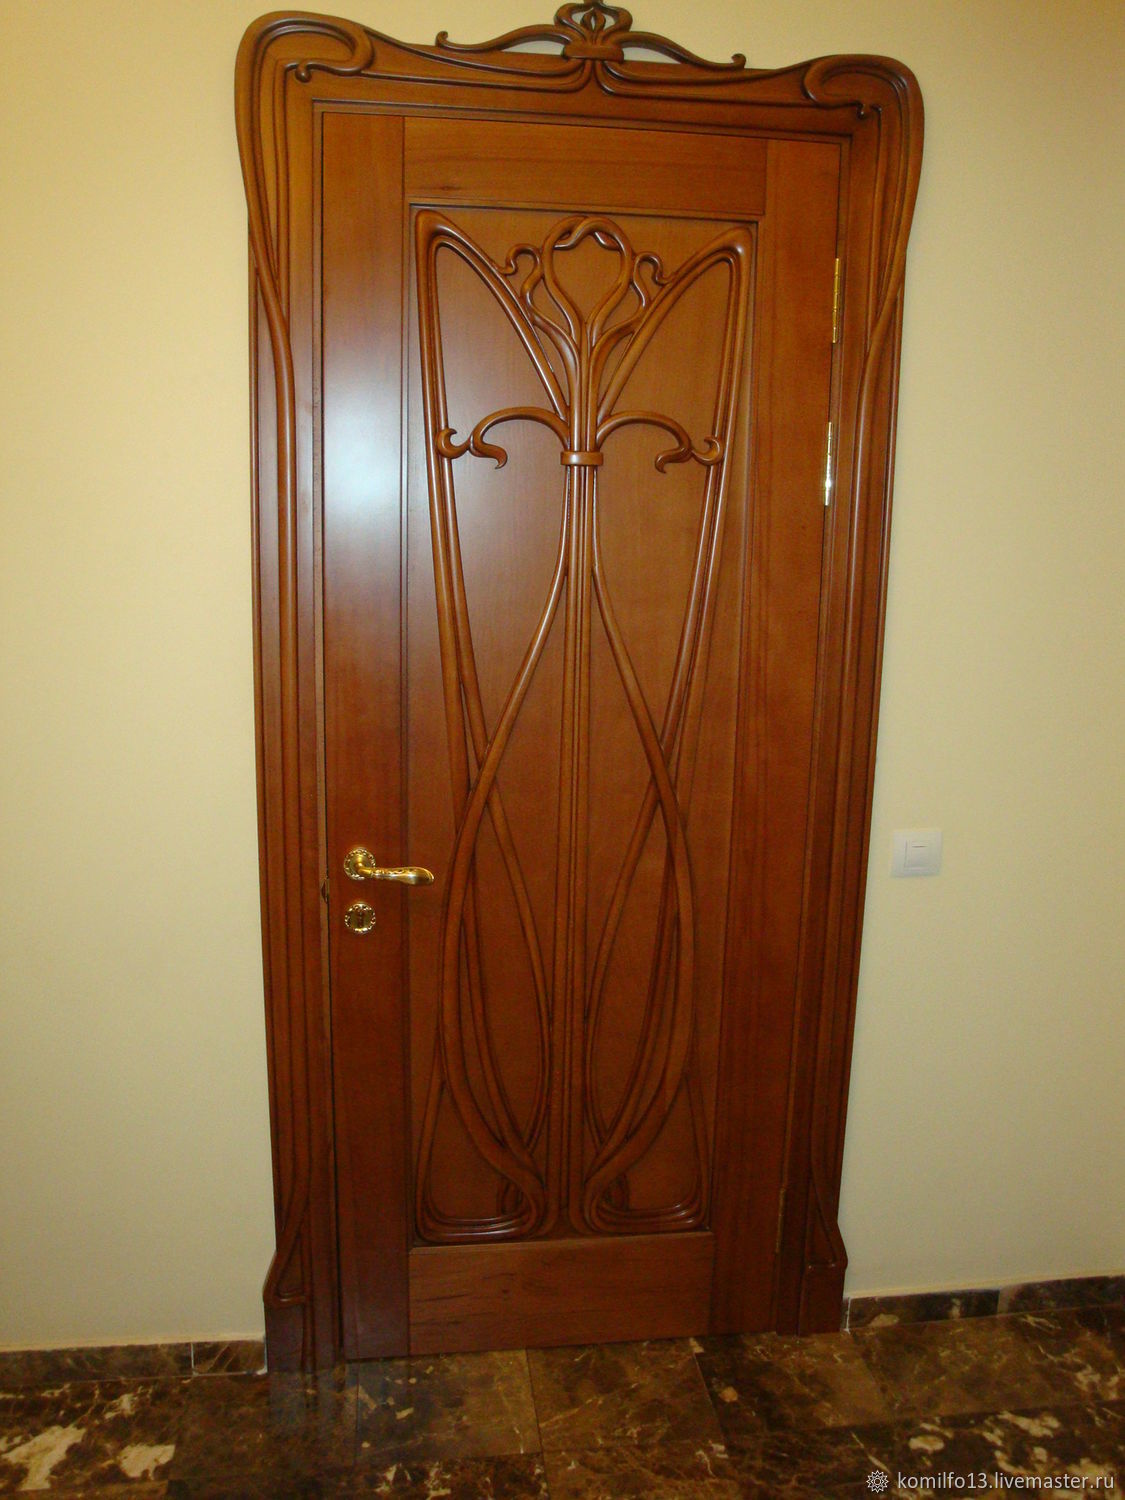 Двери Межкомнатные Саранск Фото Цены